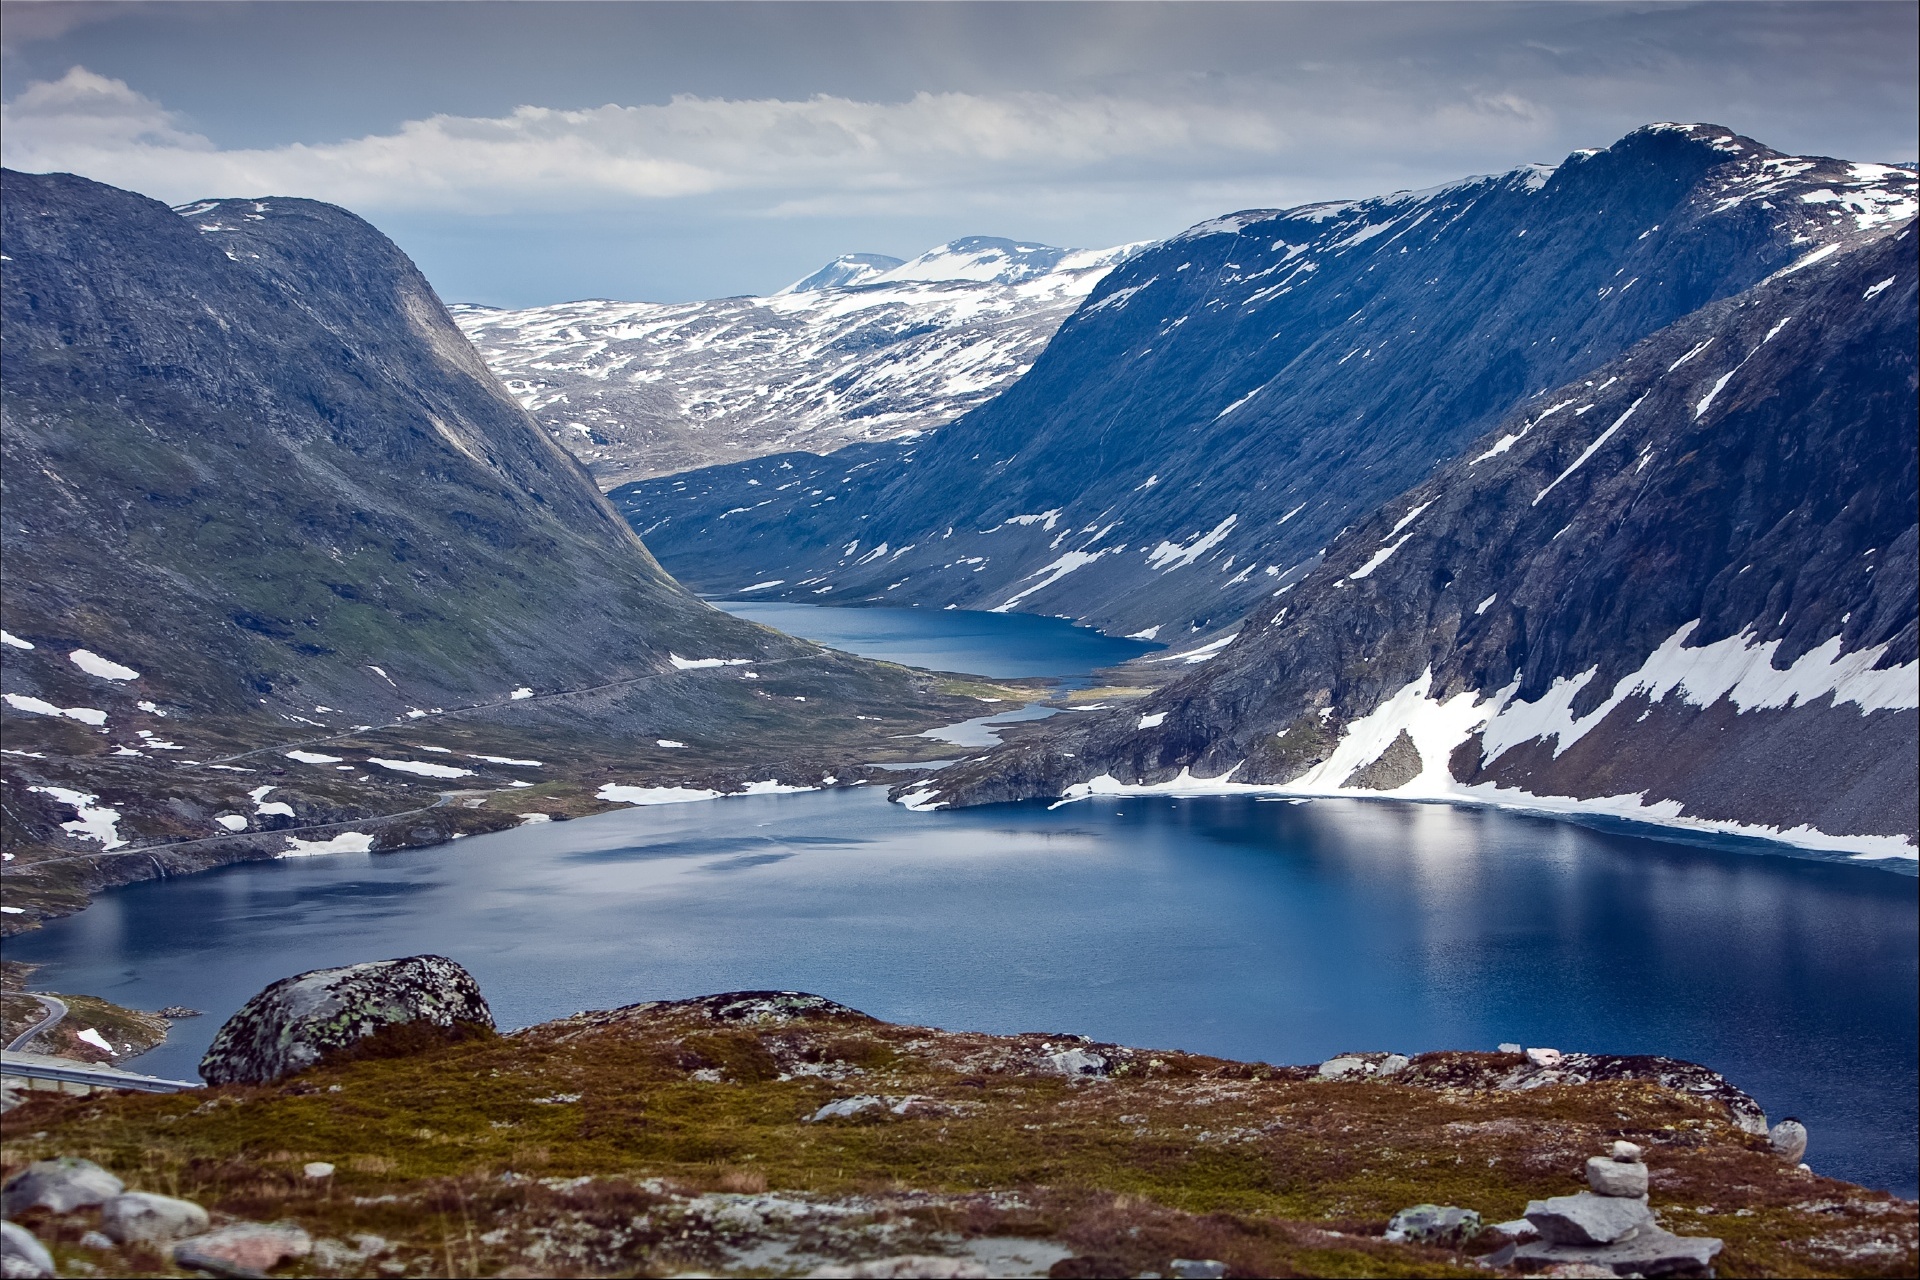 ダレスニッパ展望台から見るガイランゲルフィヨルド ノルウェーの風景 毎日更新 北欧の絶景をお届けします Hokuo Guide Com S 北欧の風景